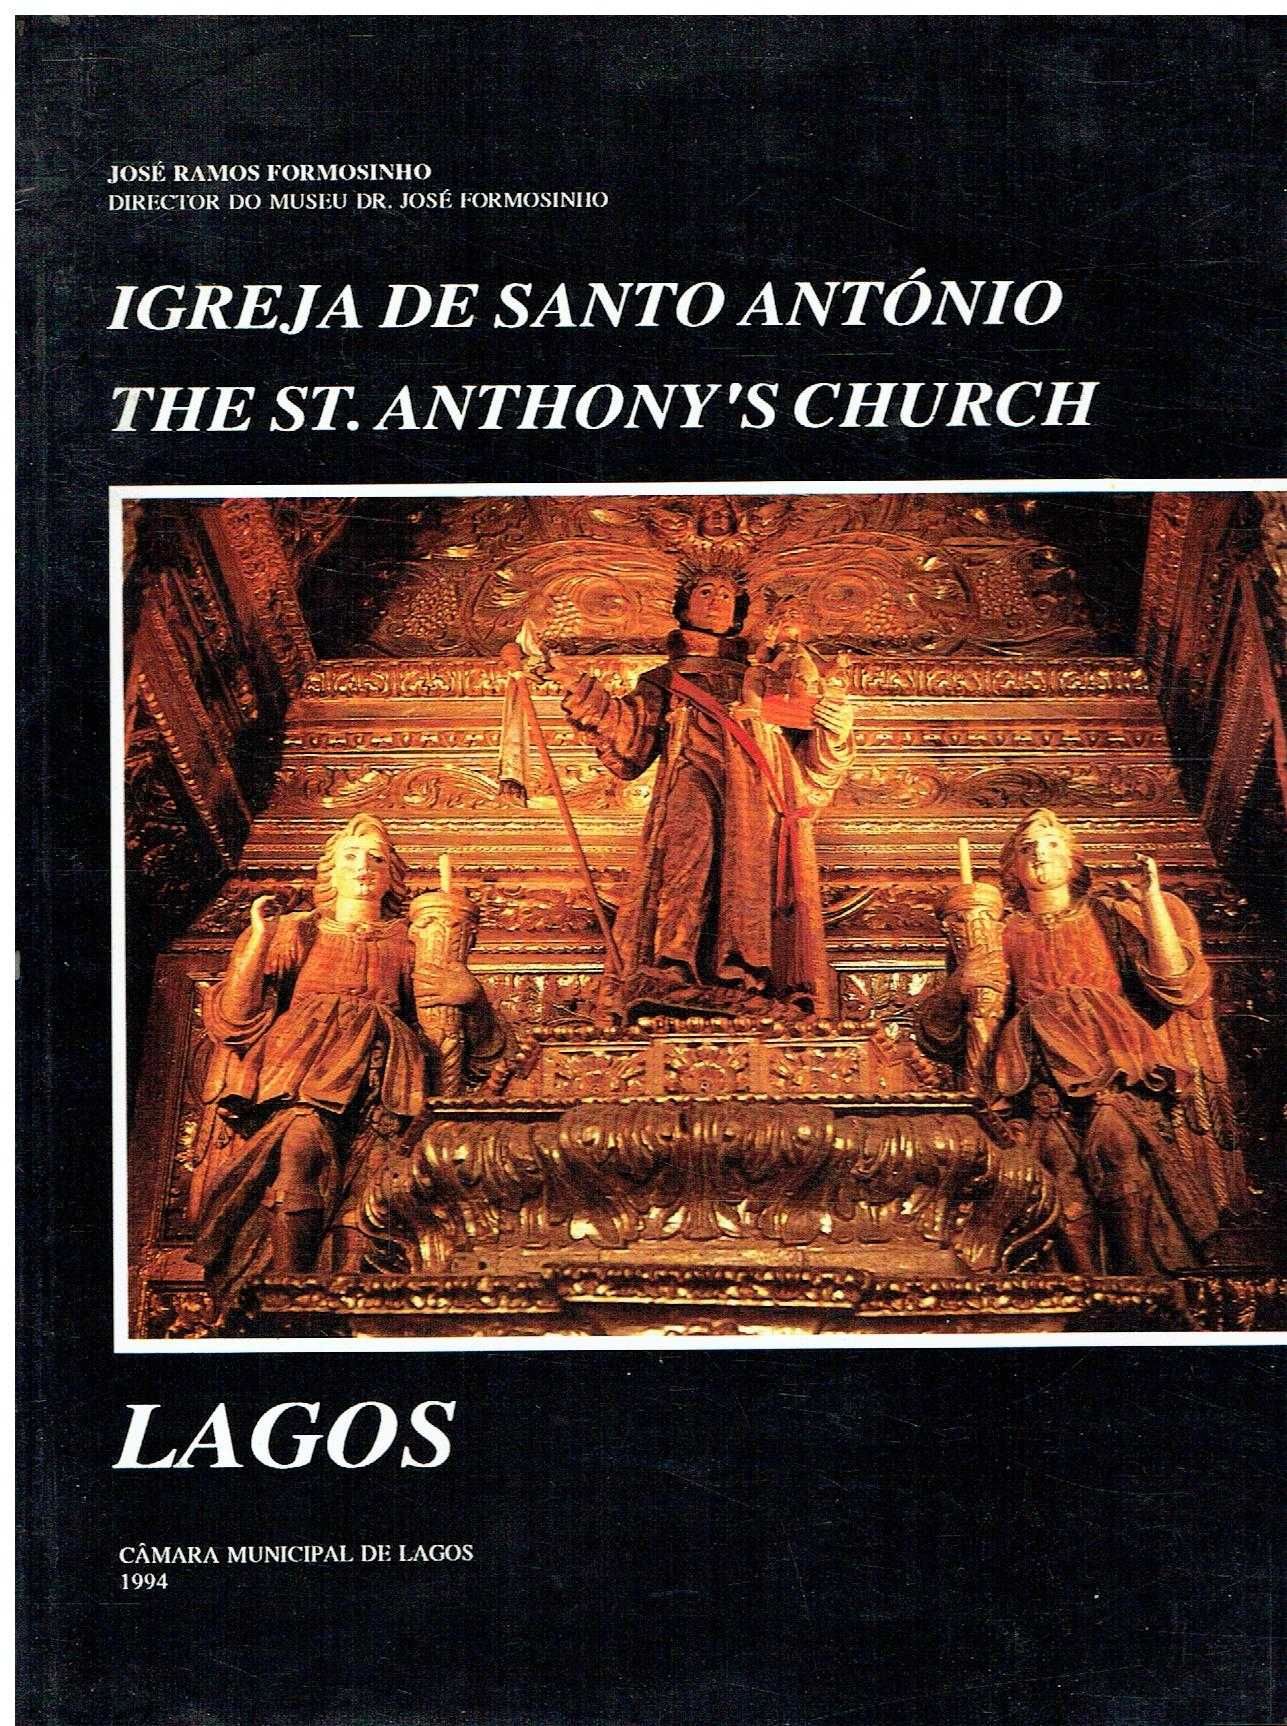 11373

Livros Antonianos / Santo António de Lisboa